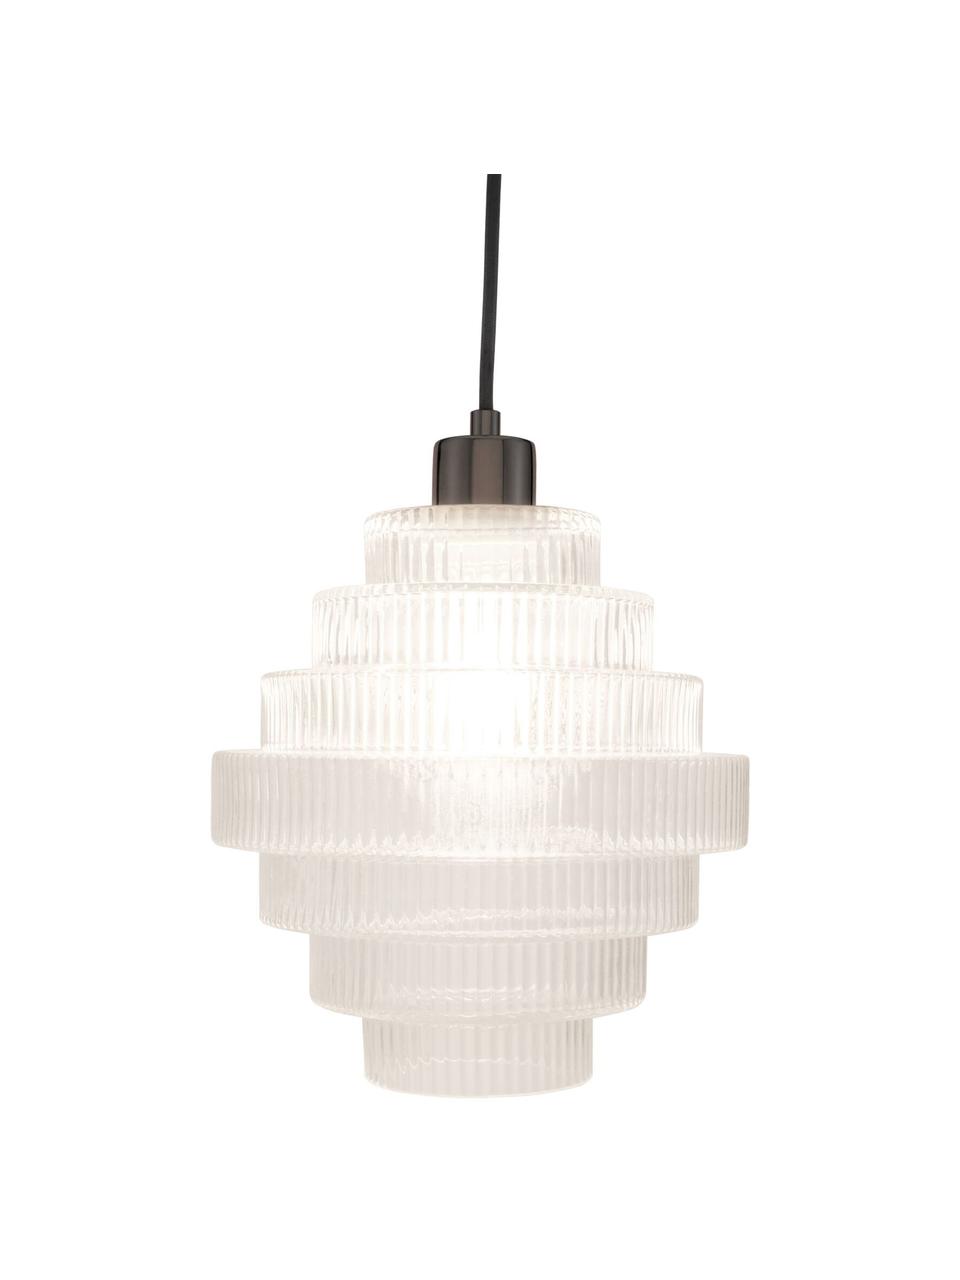 Lampa wisząca Noble Brilliance, Transparentny, odcienie chromu, Ø 24 x W 25 cm